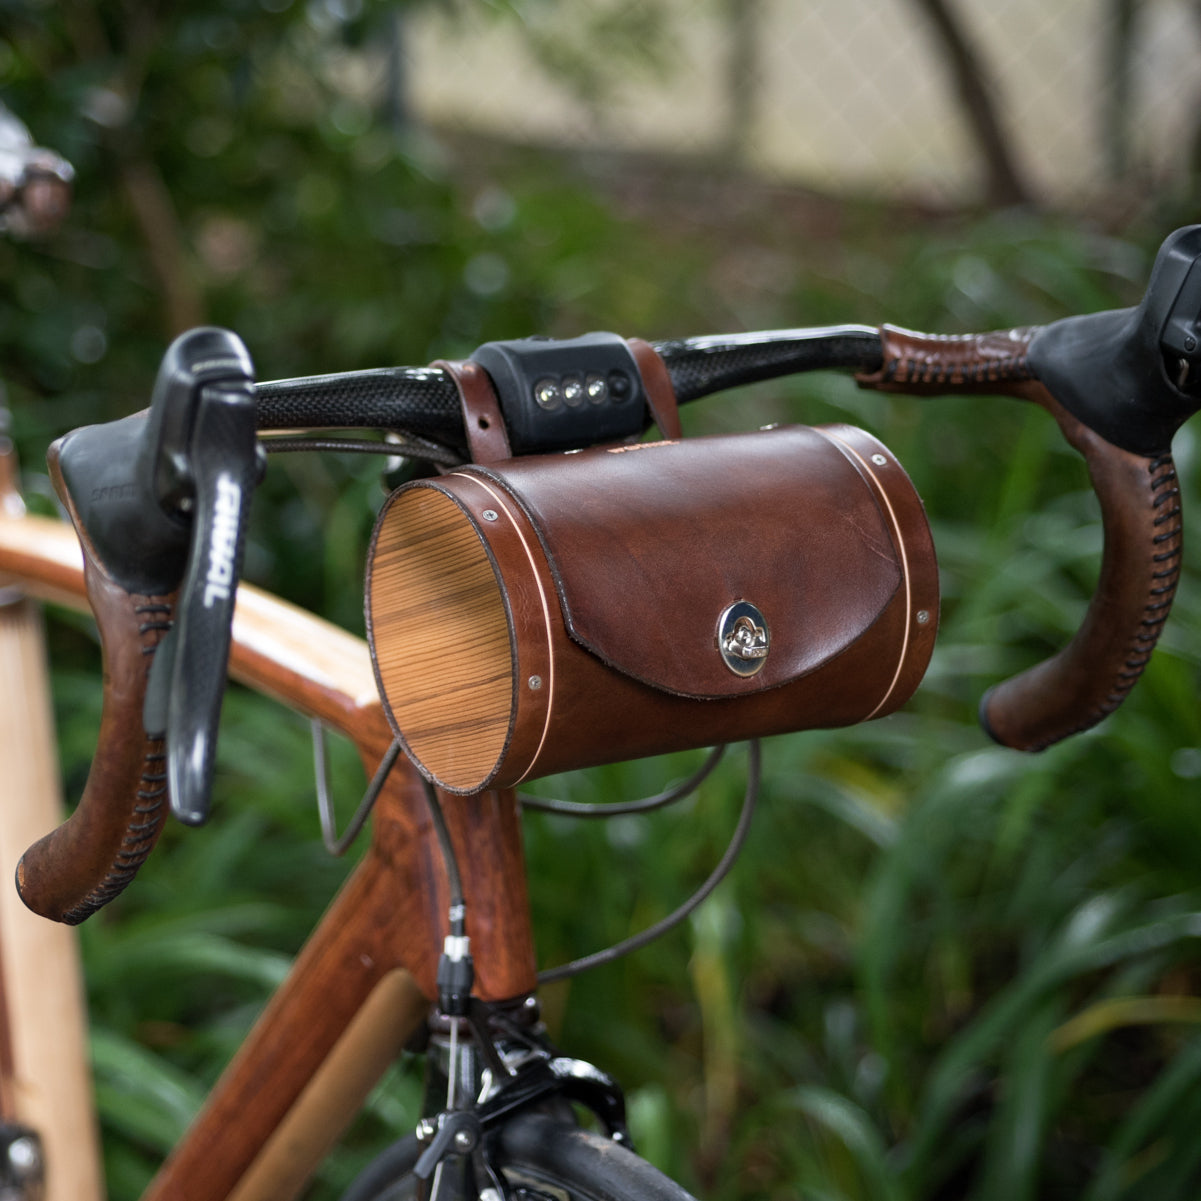 Functional & Stylish Bike Bags